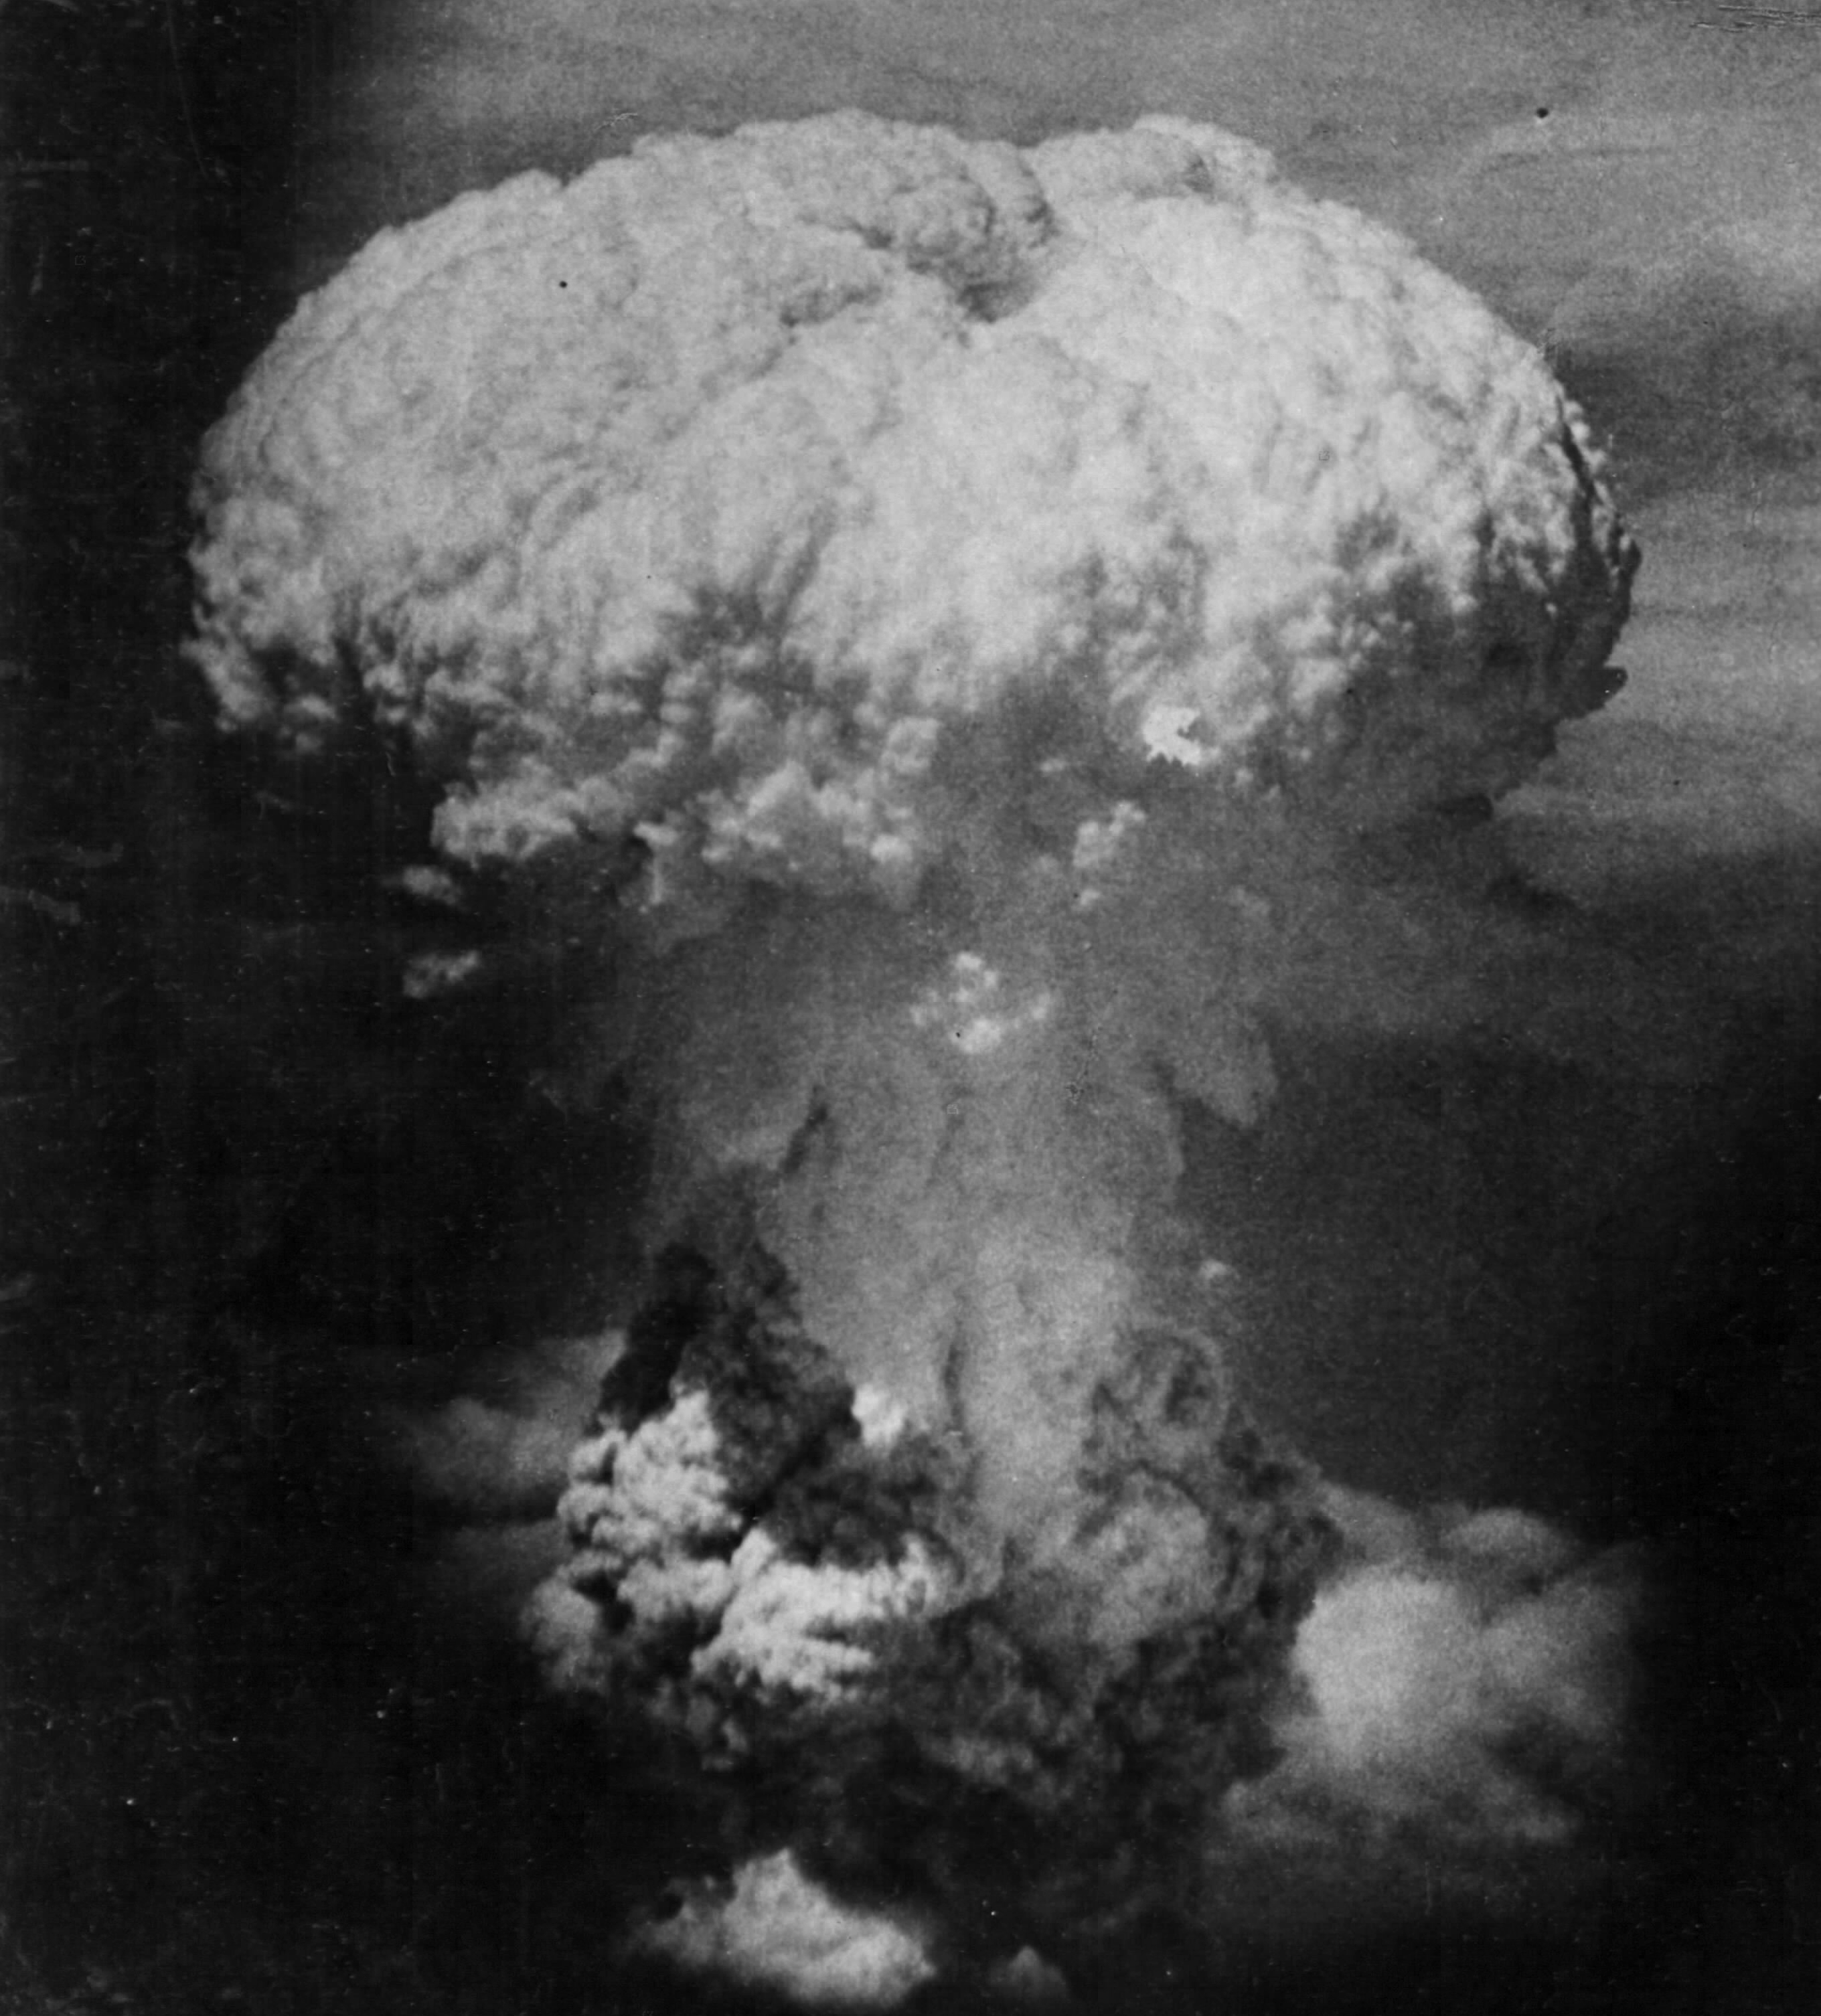 Хиросима ядерный взрыв сколько погибло. Бомбардировка Хиросимы и Нагасаки 1945. Ядерный взрыв в Японии Хиросима Нагасаки 1945. Хиросима Нагасаки ядерный взрыв. Взрыв атомной бомбы в Хиросиме.